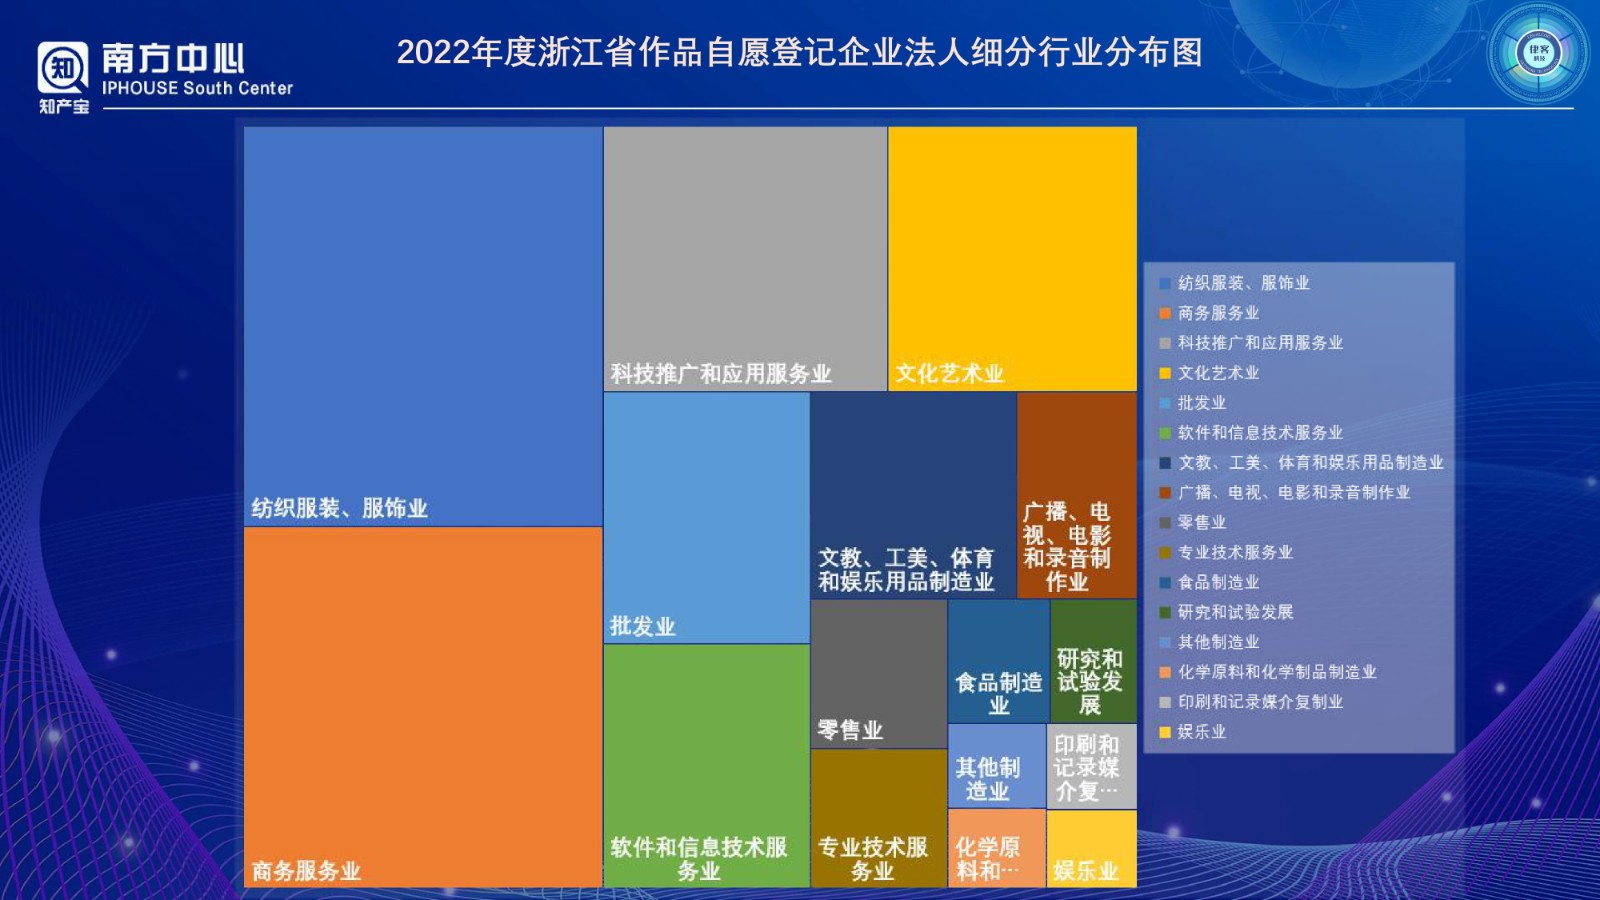 浙江省版权登记数据分析报告（2022年度）PPT-0410改_page-0009.jpg